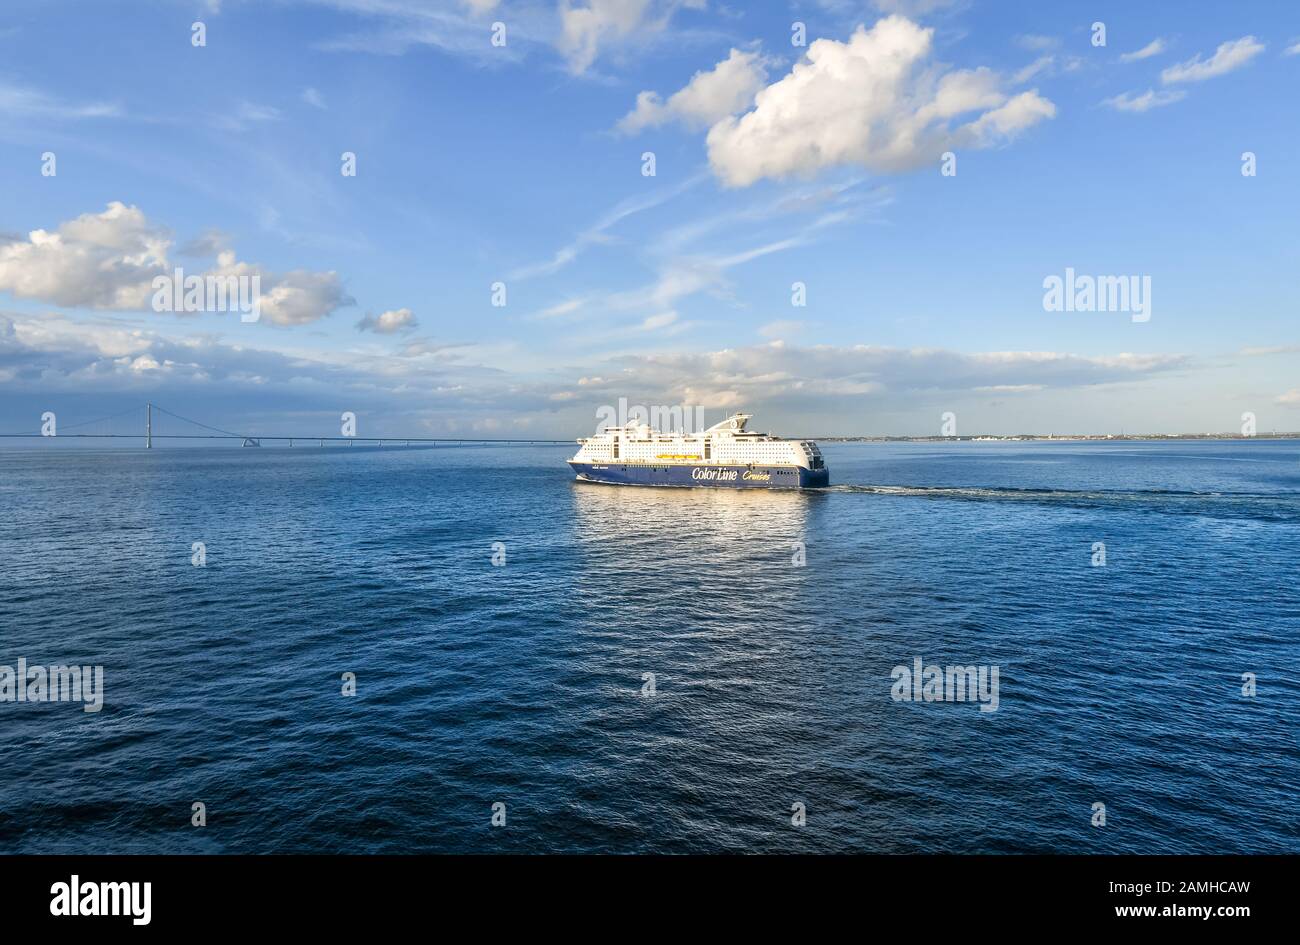 Un ferry de cruceros se dirige hacia el puente de Oresund, que abarca Suecia y Dinamarca, en el mar Báltico. Foto de stock